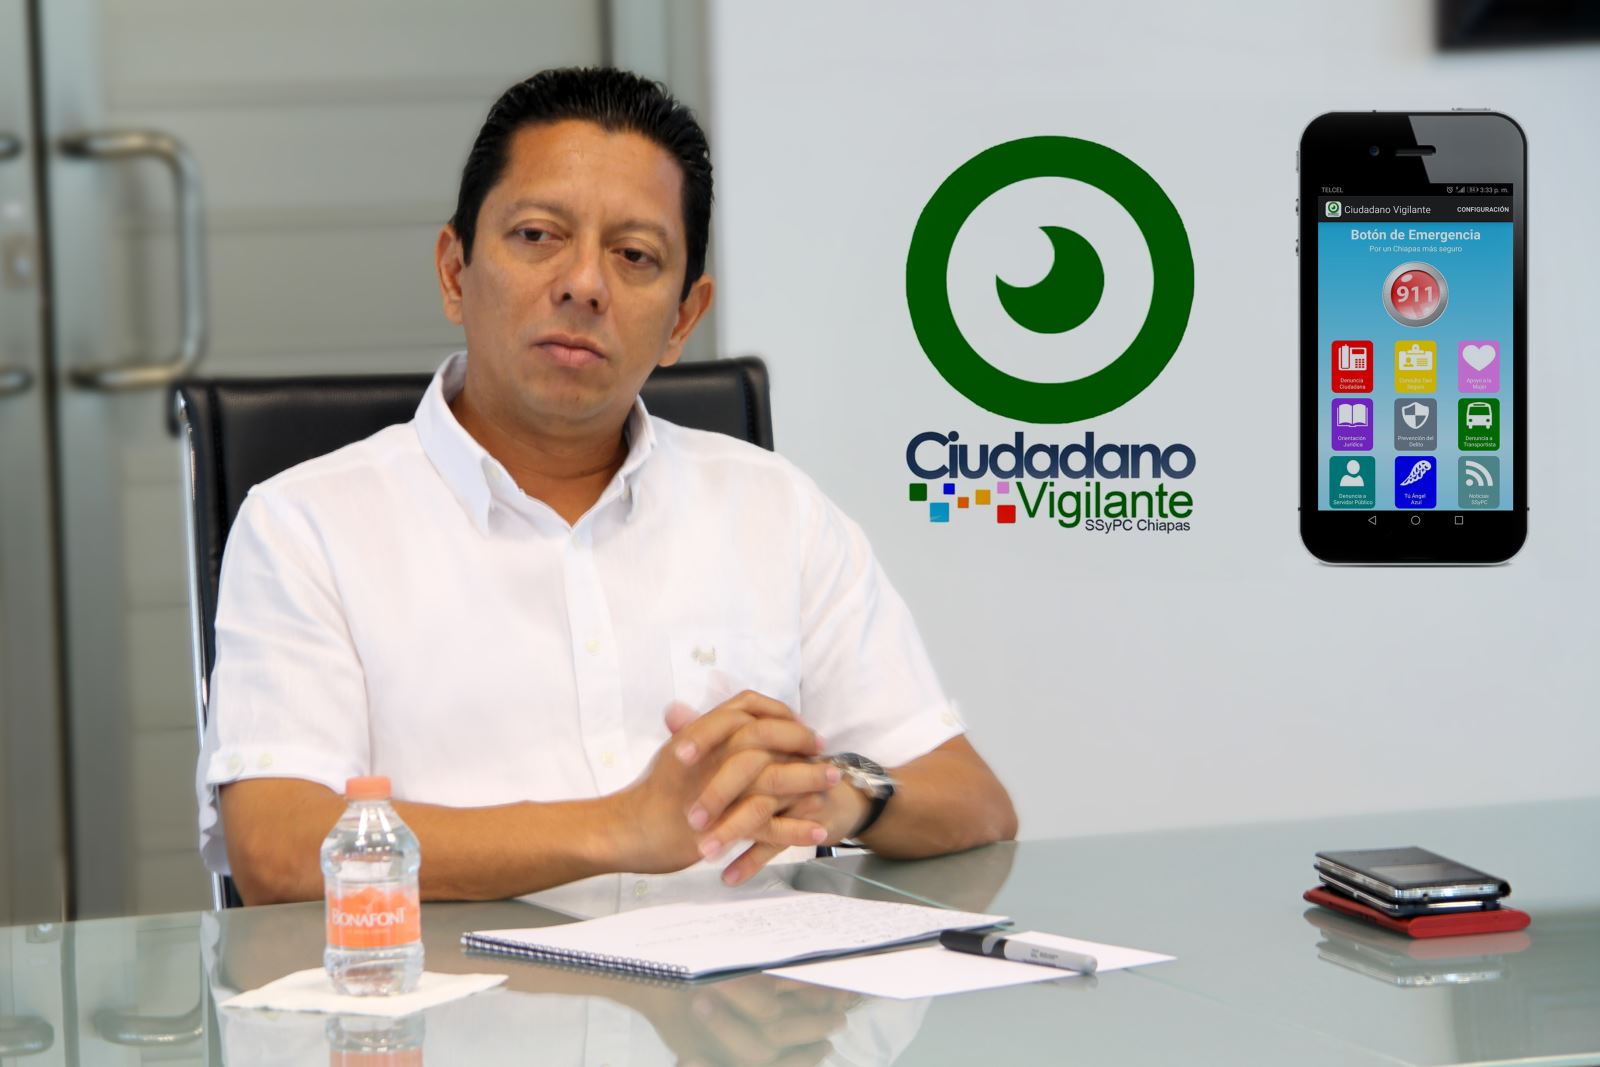 Más de 6 mil usuarios han confiado en el aplicativo para celulares de la SSyPC “Ciudadano Vigilante”: Llaven Abarca